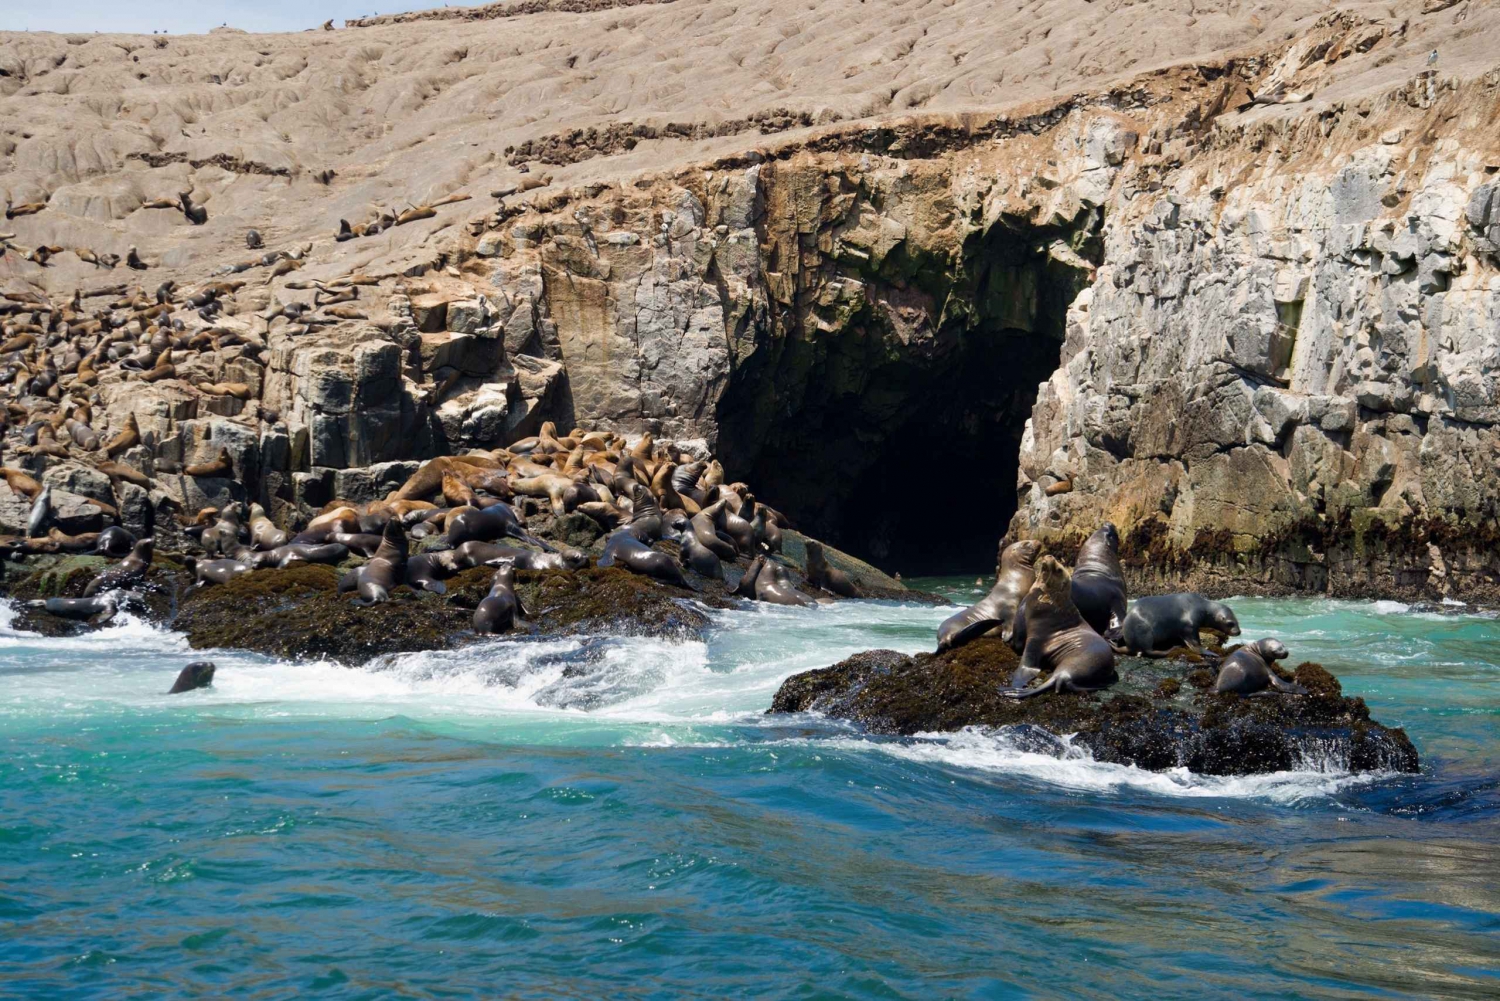 Lima: Schwimmen im Seelöwen und Kreuzfahrt zu den Palomino-Inseln